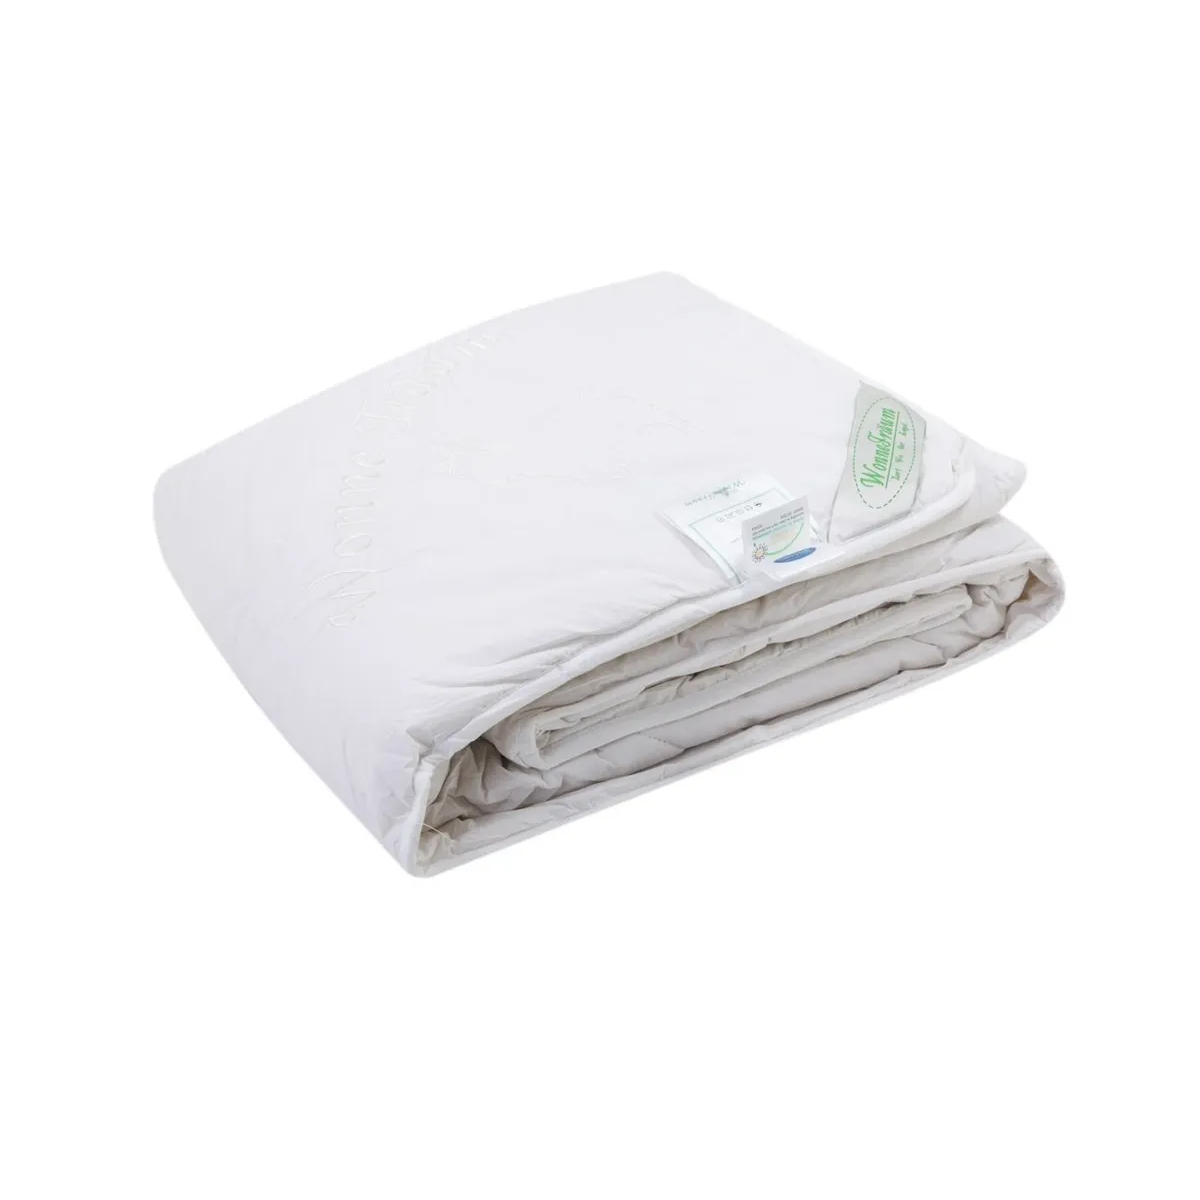 Одеяло кашемировое Wonne Traum белое 200х220 см (2709-136712) одеяло кашемировое wonne traum белое 150х210 см 2709 136711